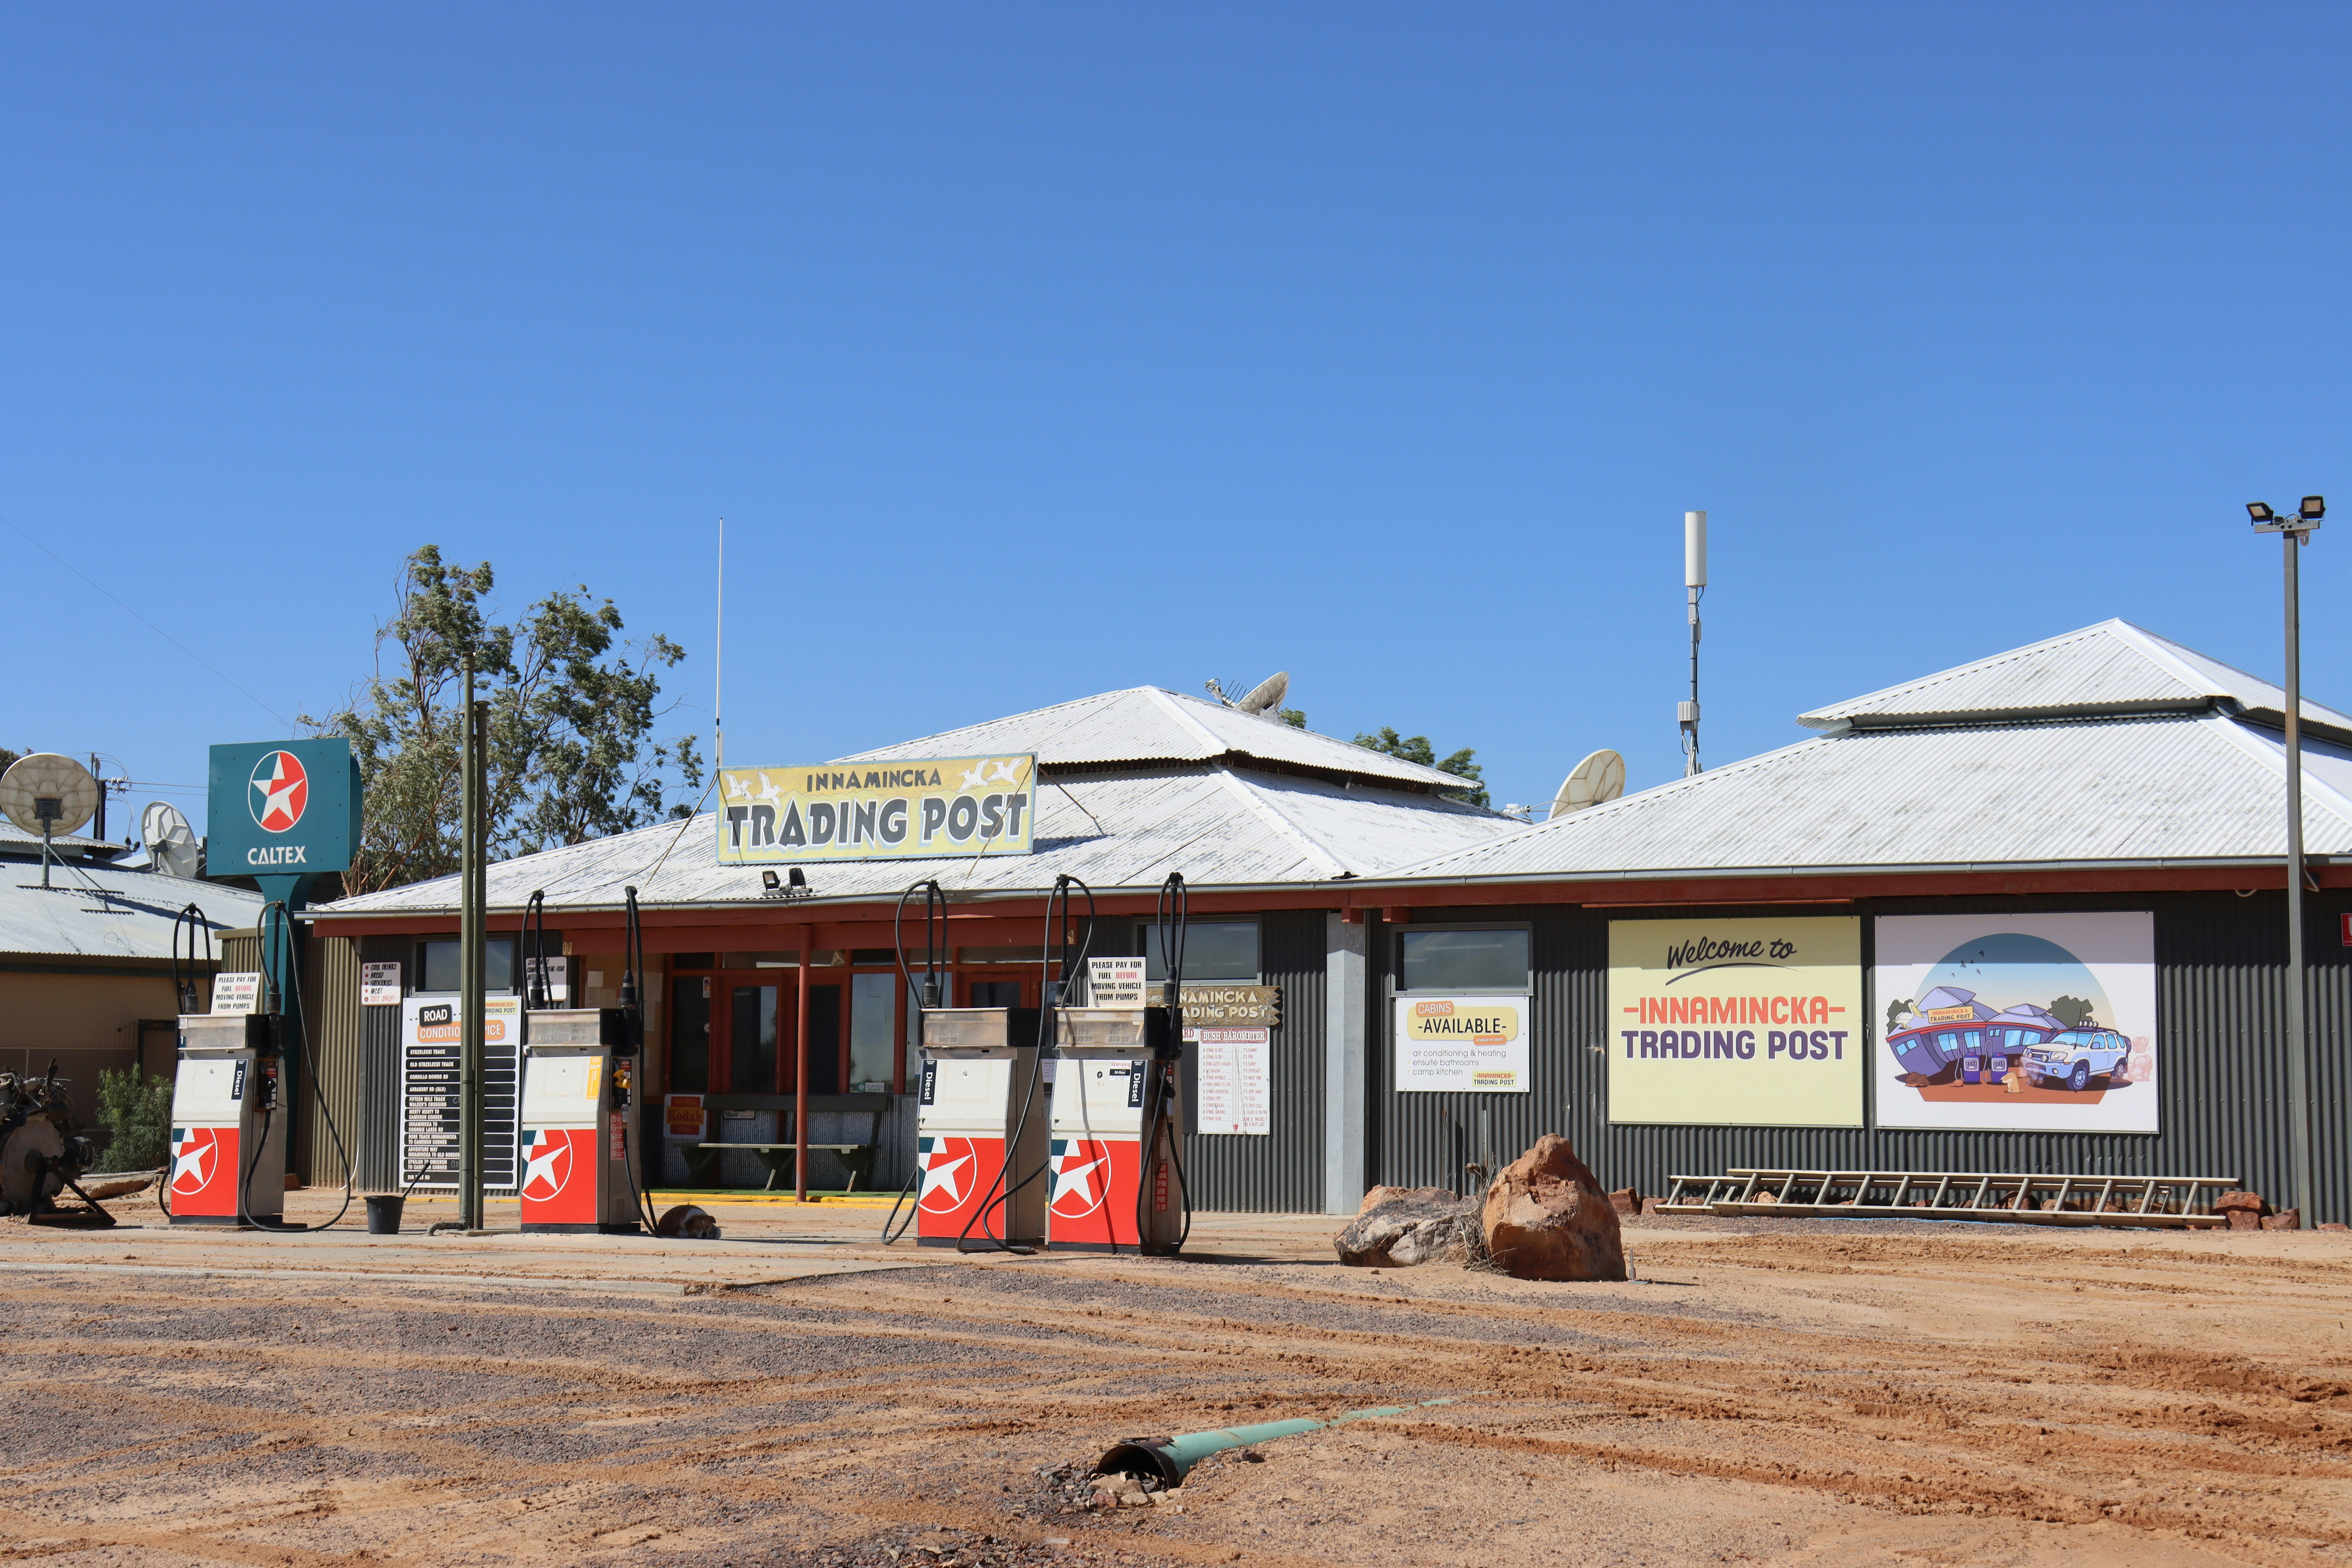 Trading post, Innamincka, South Australia